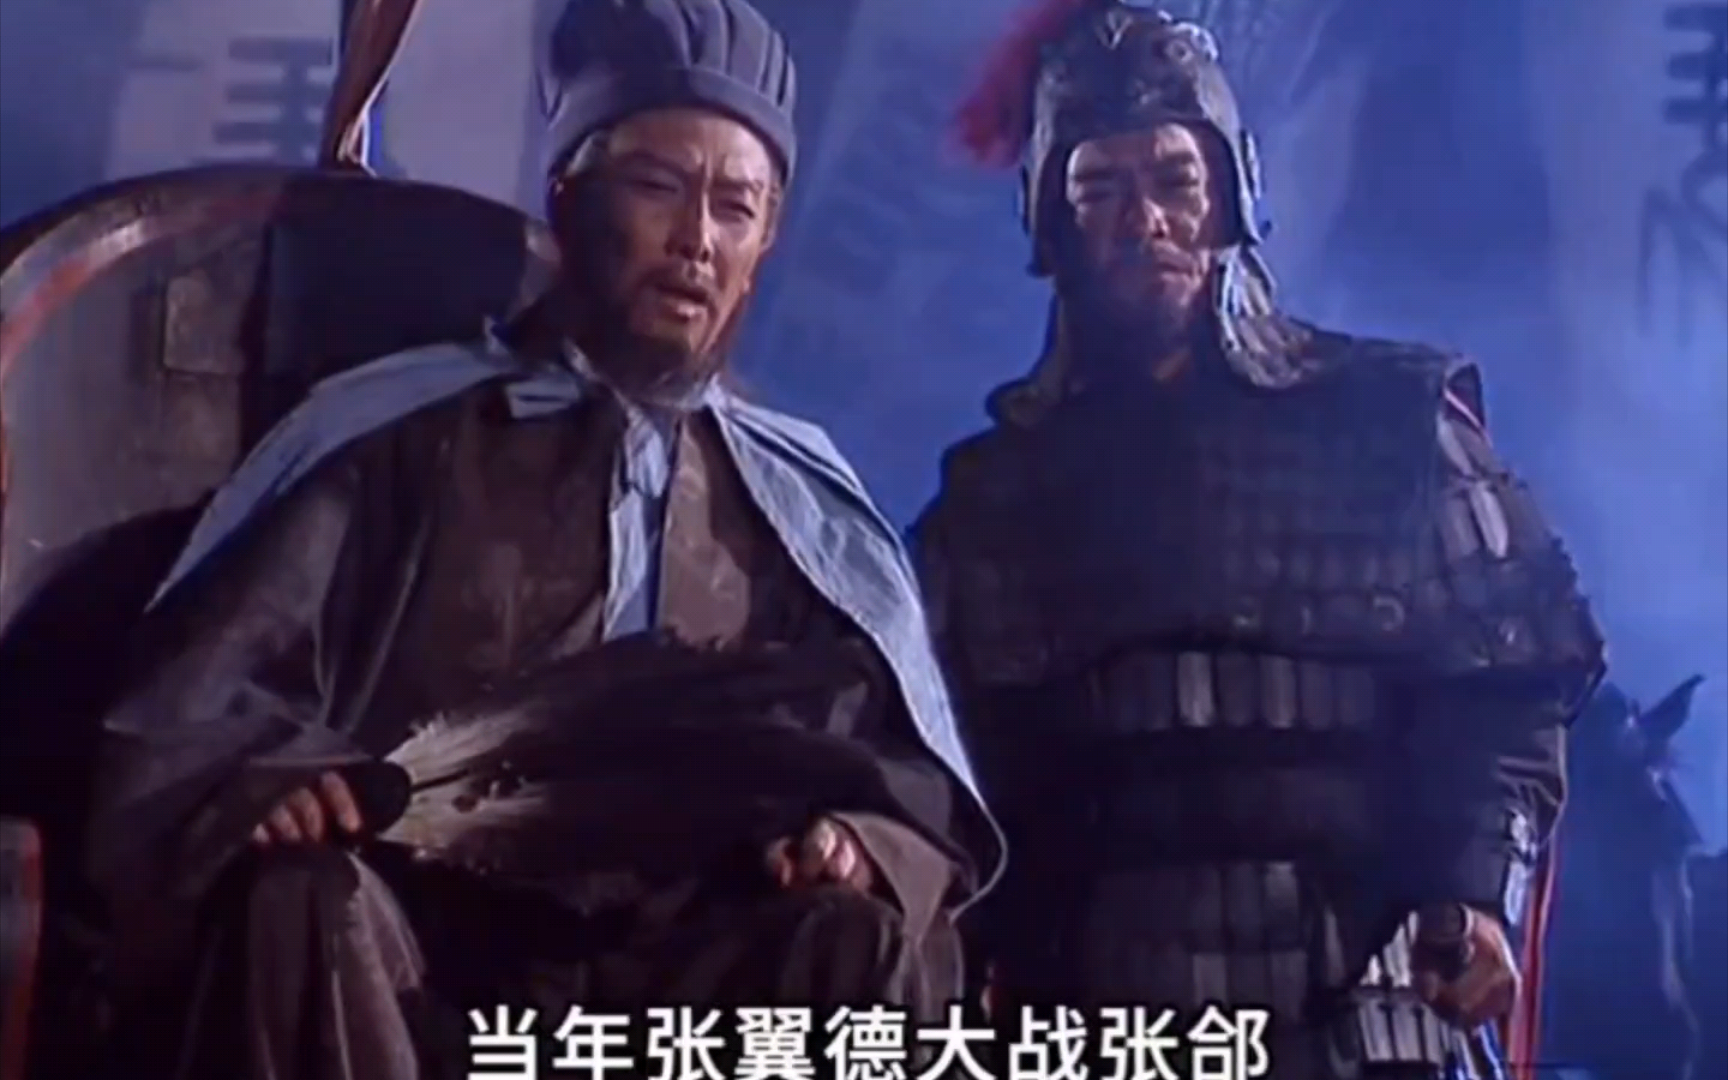 《三国演义》:张郃堪称后期战力天花板,蜀国六大高手都没能将他擒住!